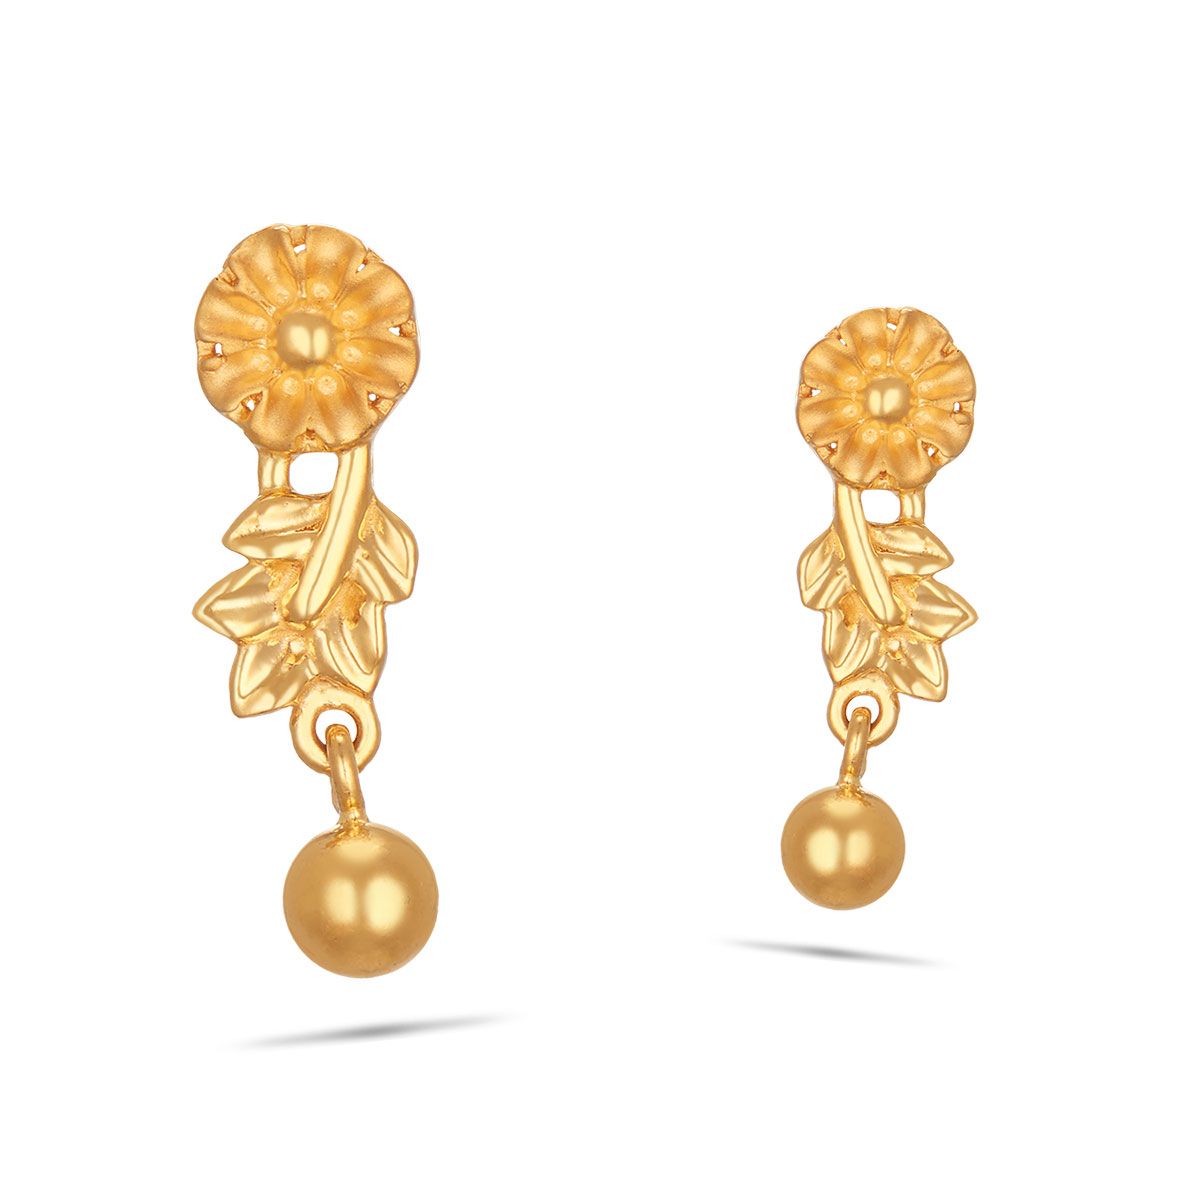 Share more than 74 long earrings design images best - esthdonghoadian